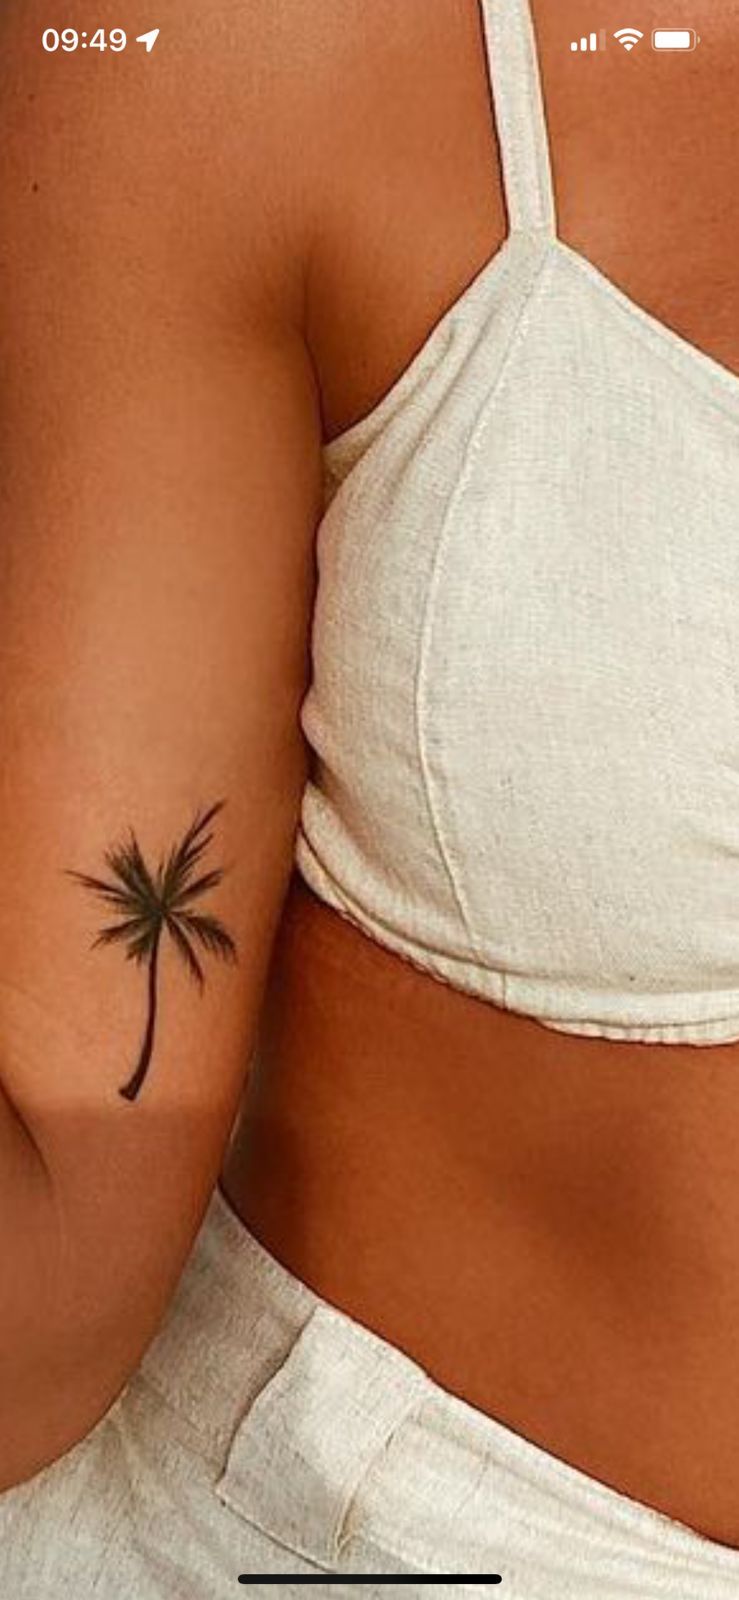 Leaf Tattoo Ideas For Women